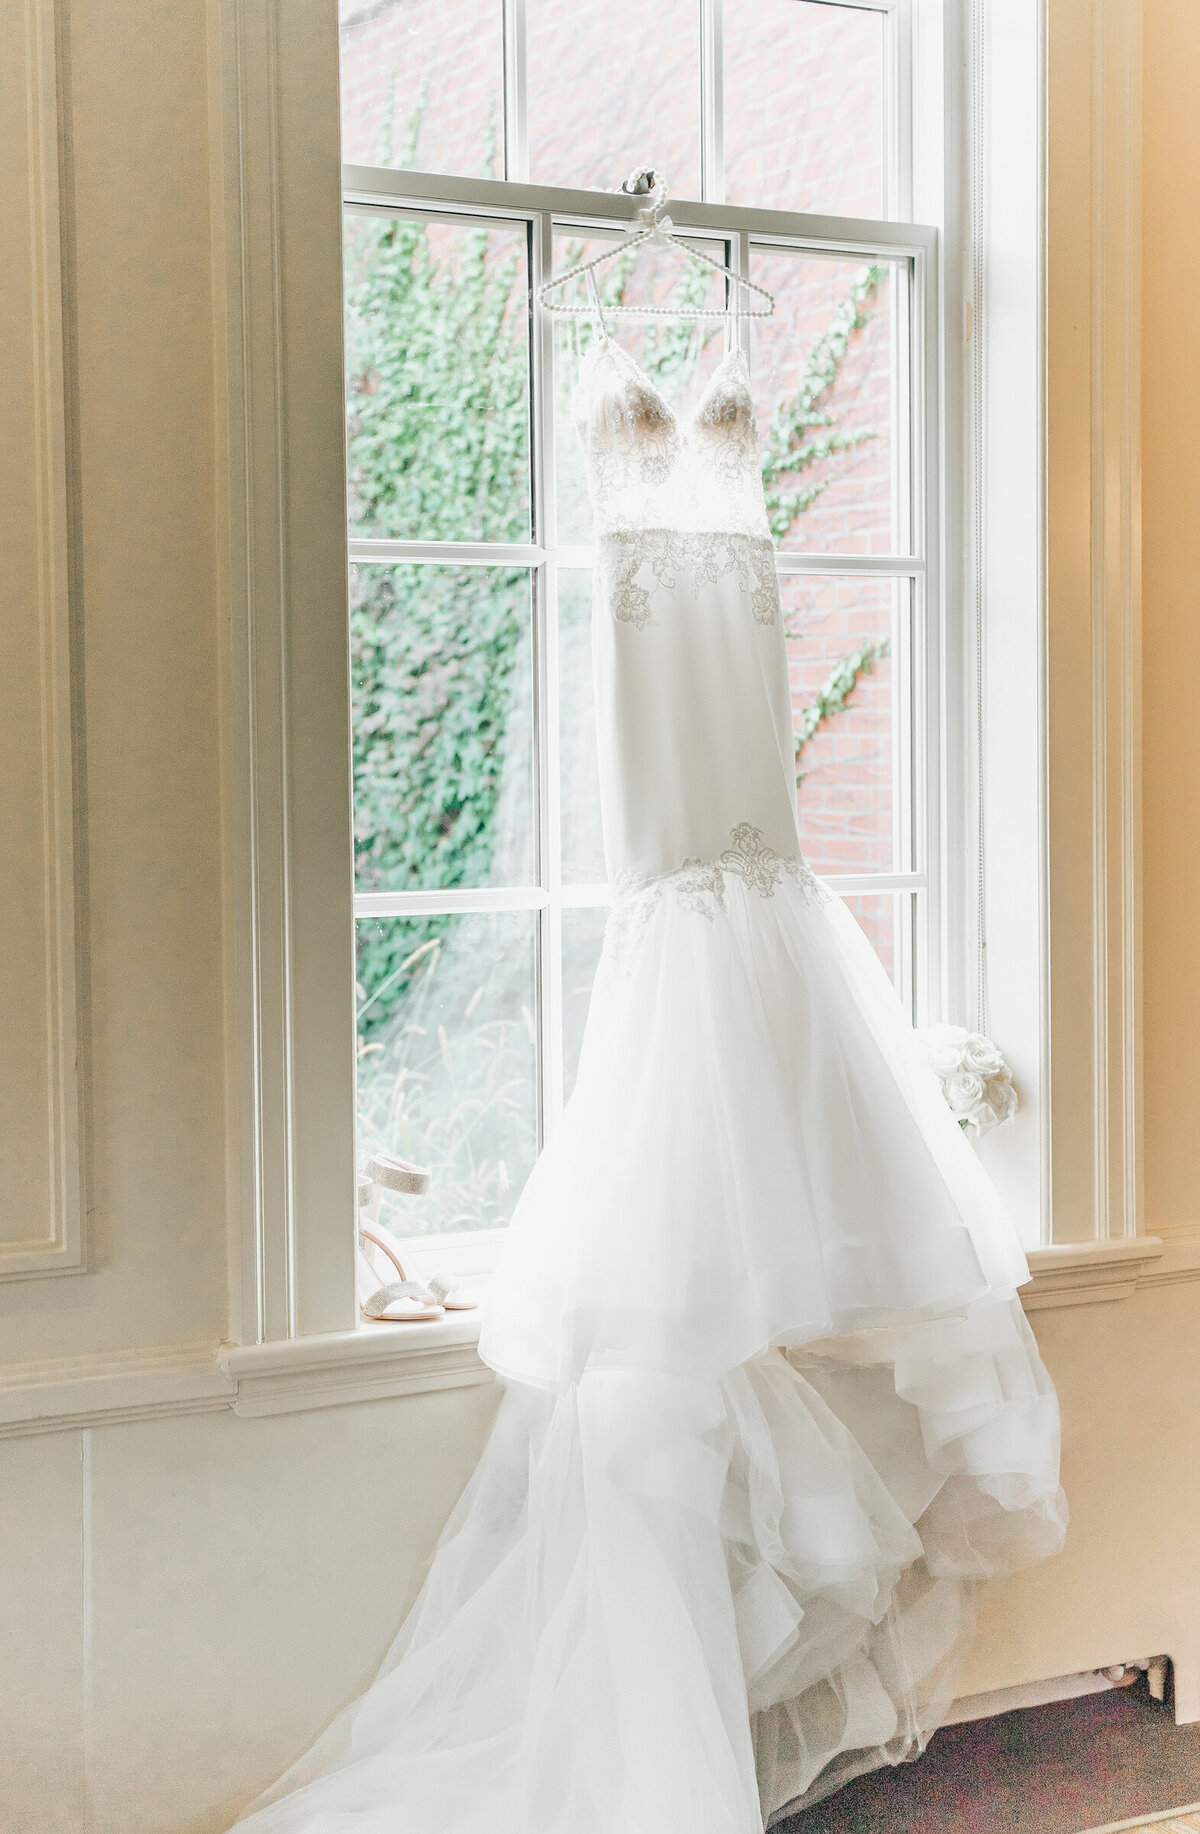 Elegant wedding dress hanging in a window on a wedding day